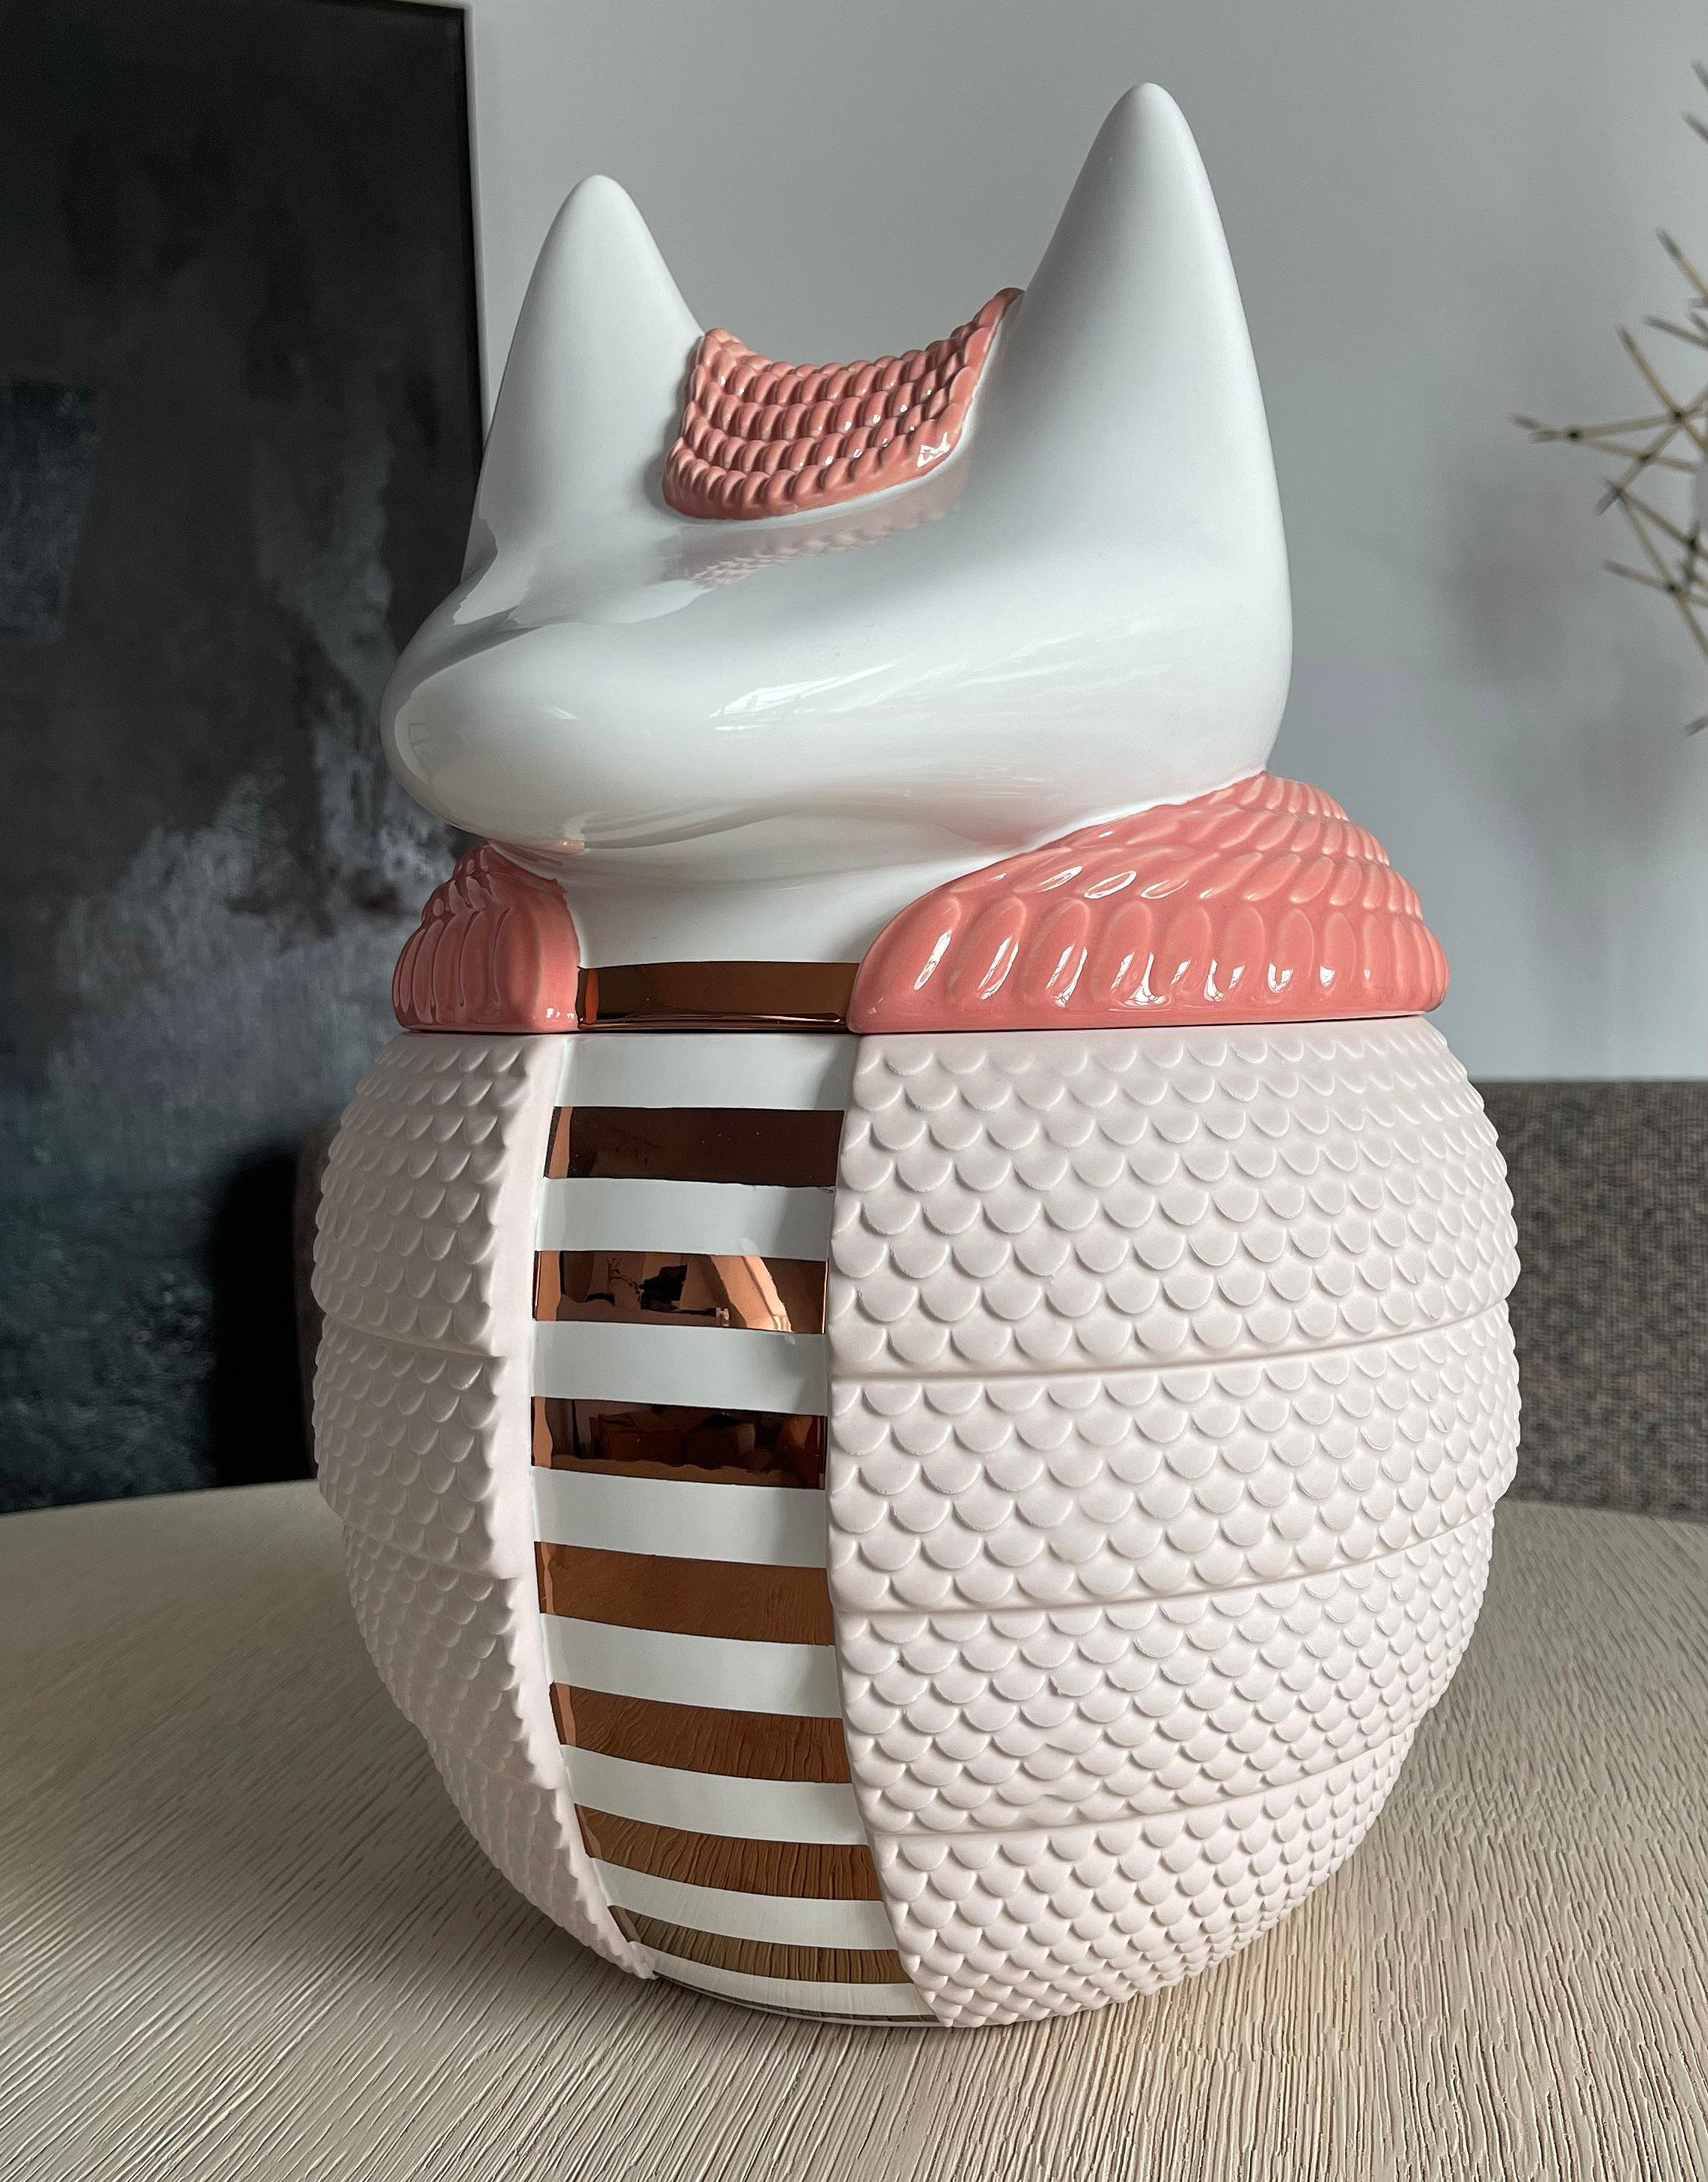 Vase / récipient en céramique - Animalità Loricato par Elena Salmistraro pour Bosa

Loricato, conçu par Elena Salmistraro pour Bosa, est un récipient/vase en forme de tatou en céramique enrichie de métaux précieux, dont la signification symbolique